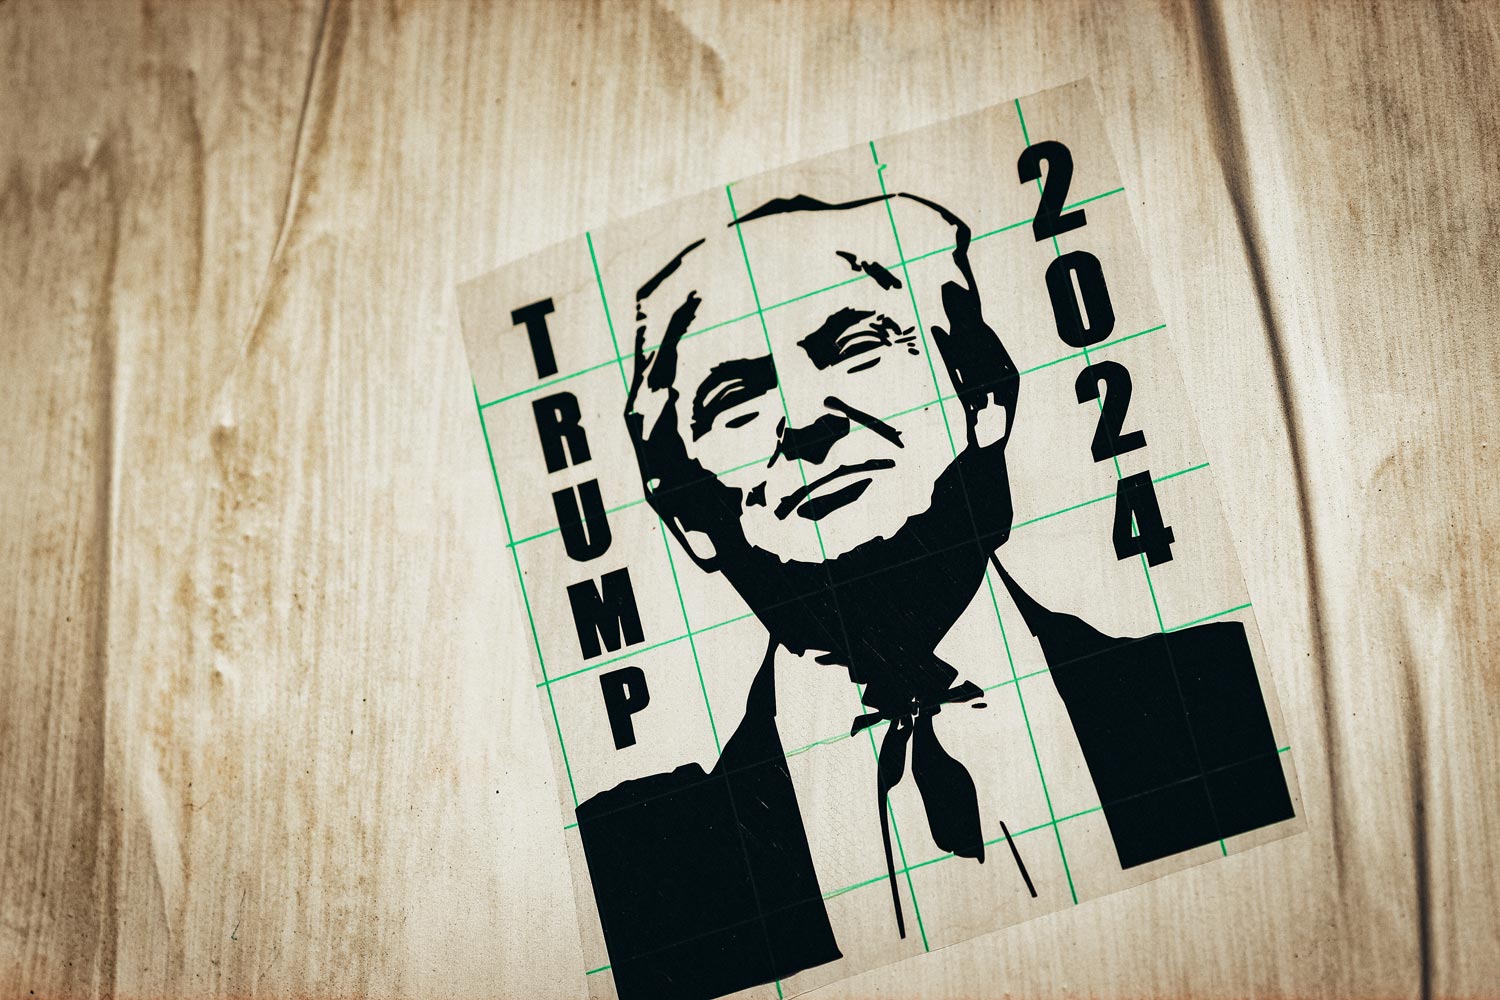 Les présidentielles américaines de 2024: un retour de Trump est-il possible ?